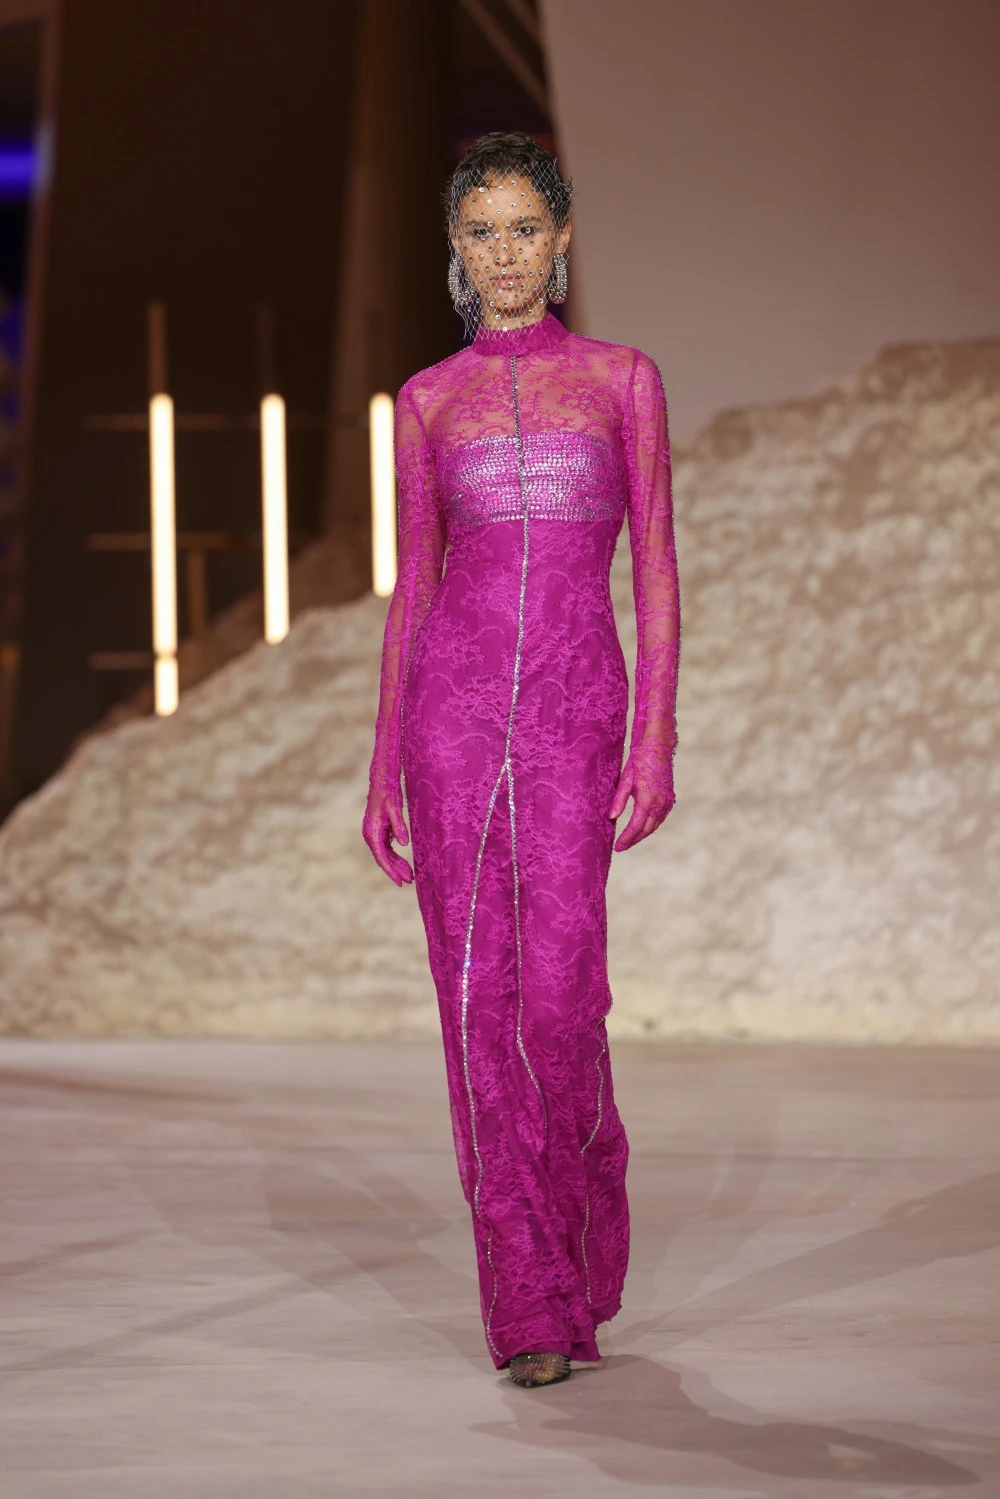 أسبوع الأزياء في الرياض: انتفاضة إبداعية جديدة للمملكة